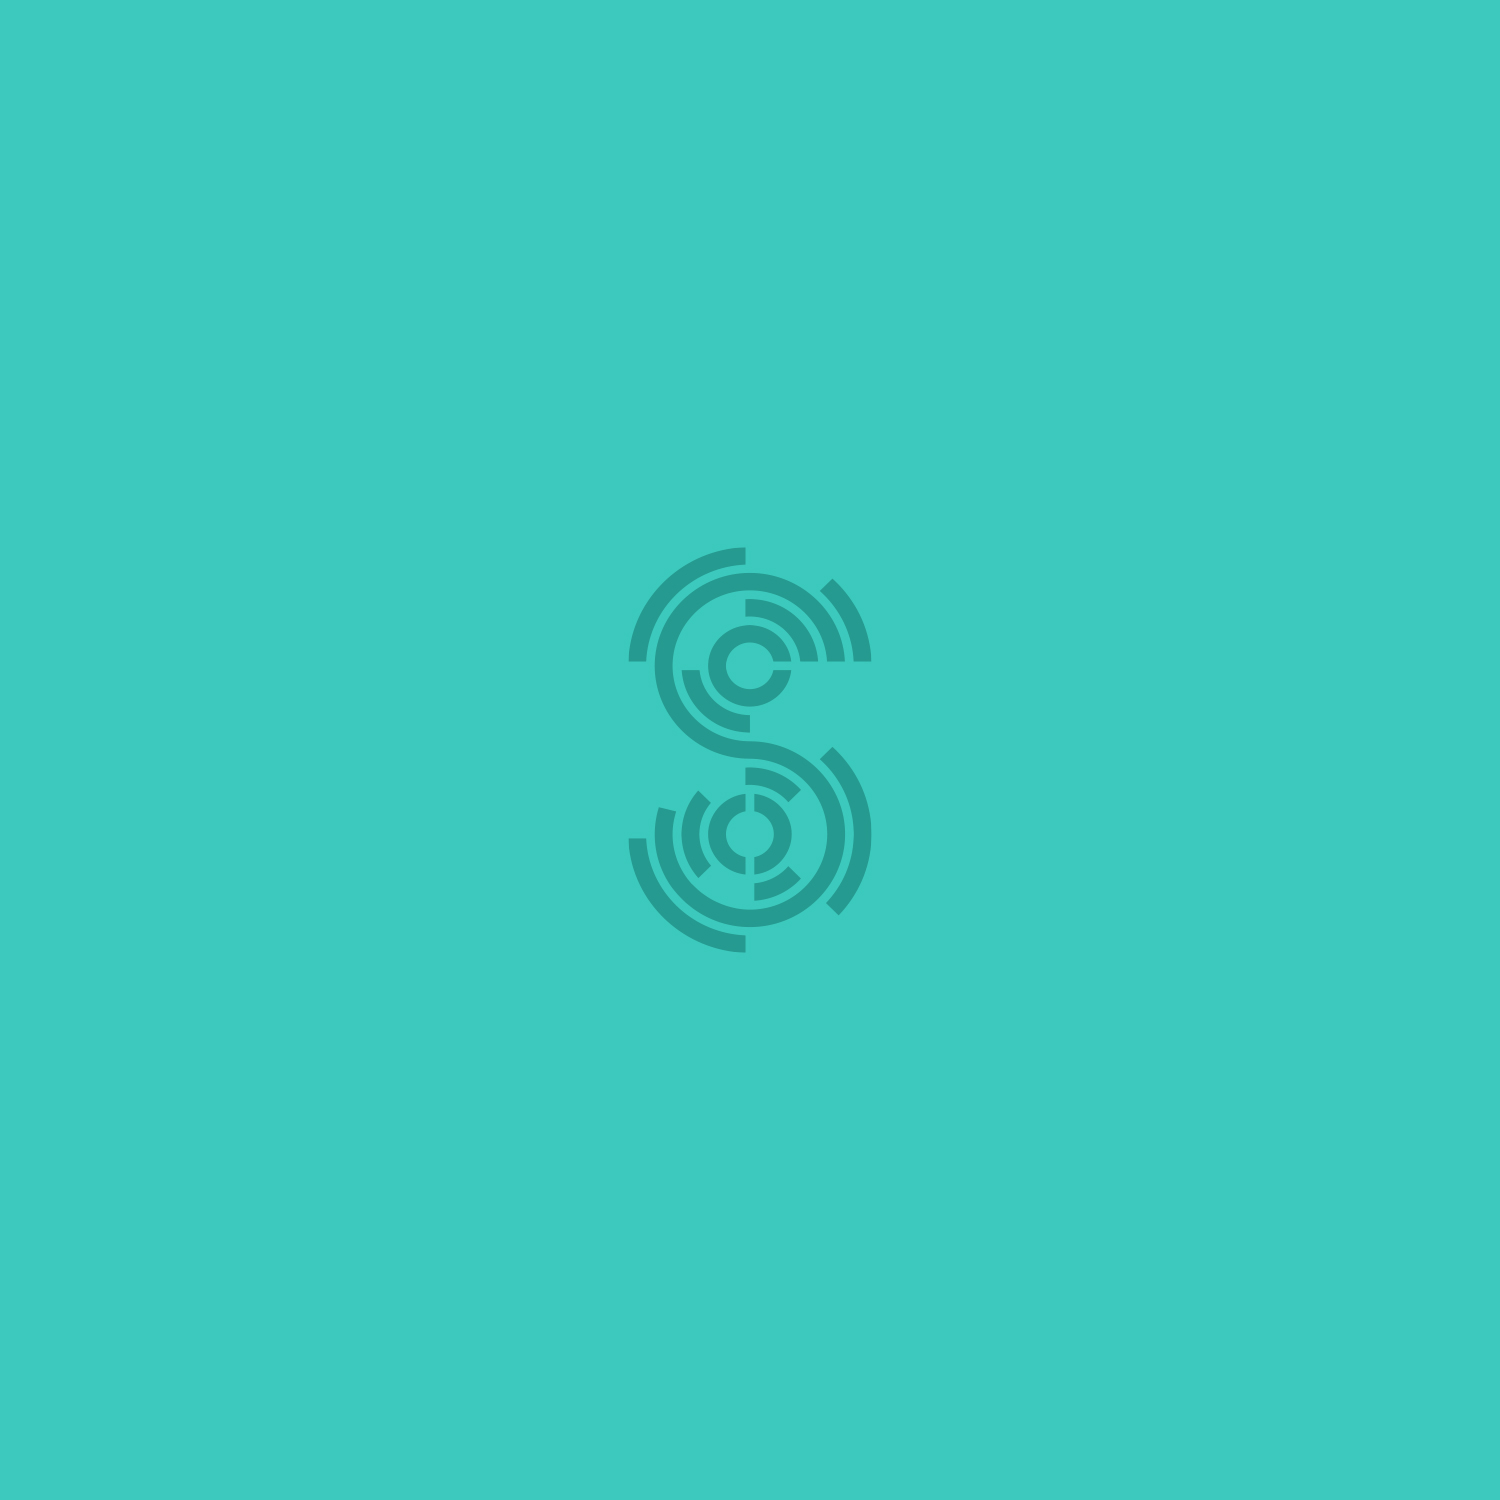 Sunburst S Logodesign Monogram